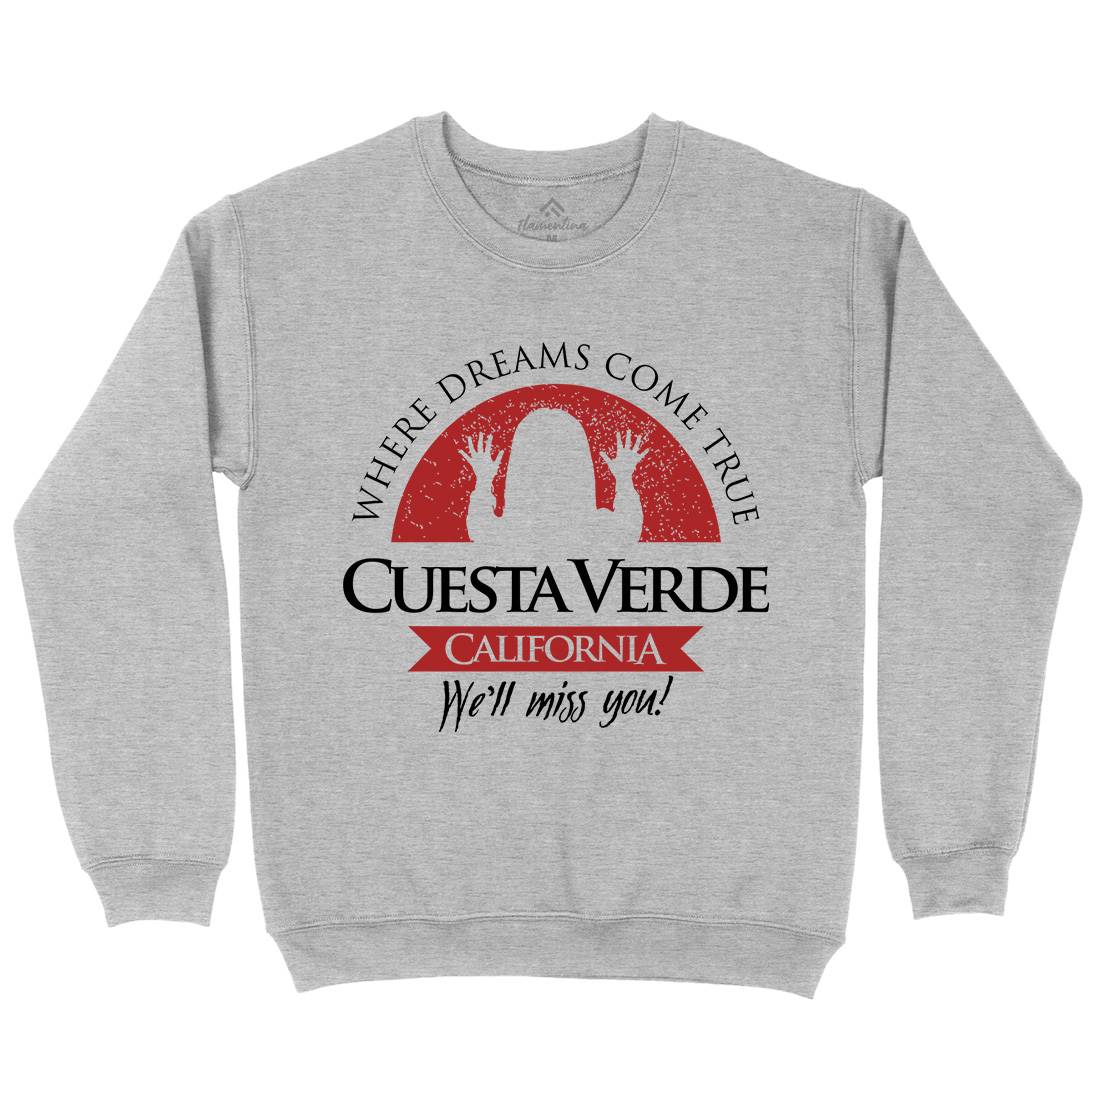 Cuesta Verde Kids Crew Neck Sweatshirt Horror D337